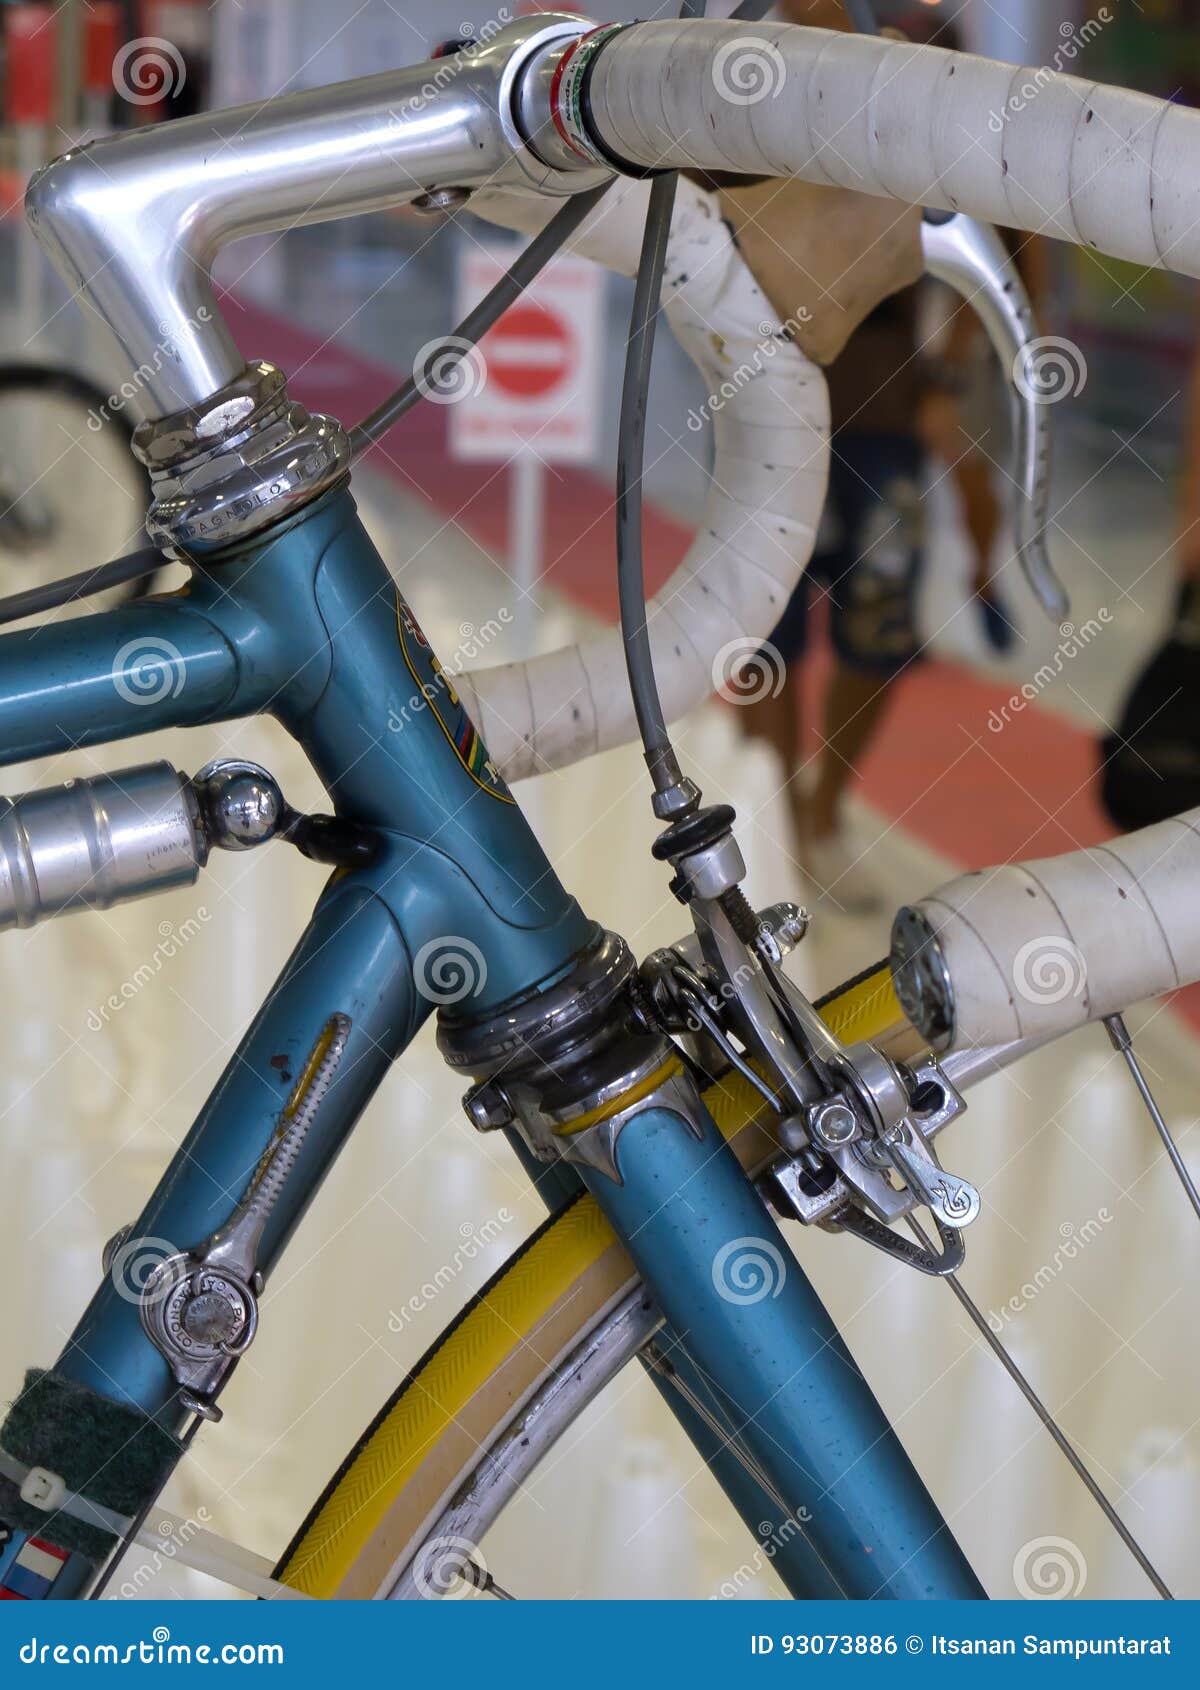 cheap cult bmx bikes